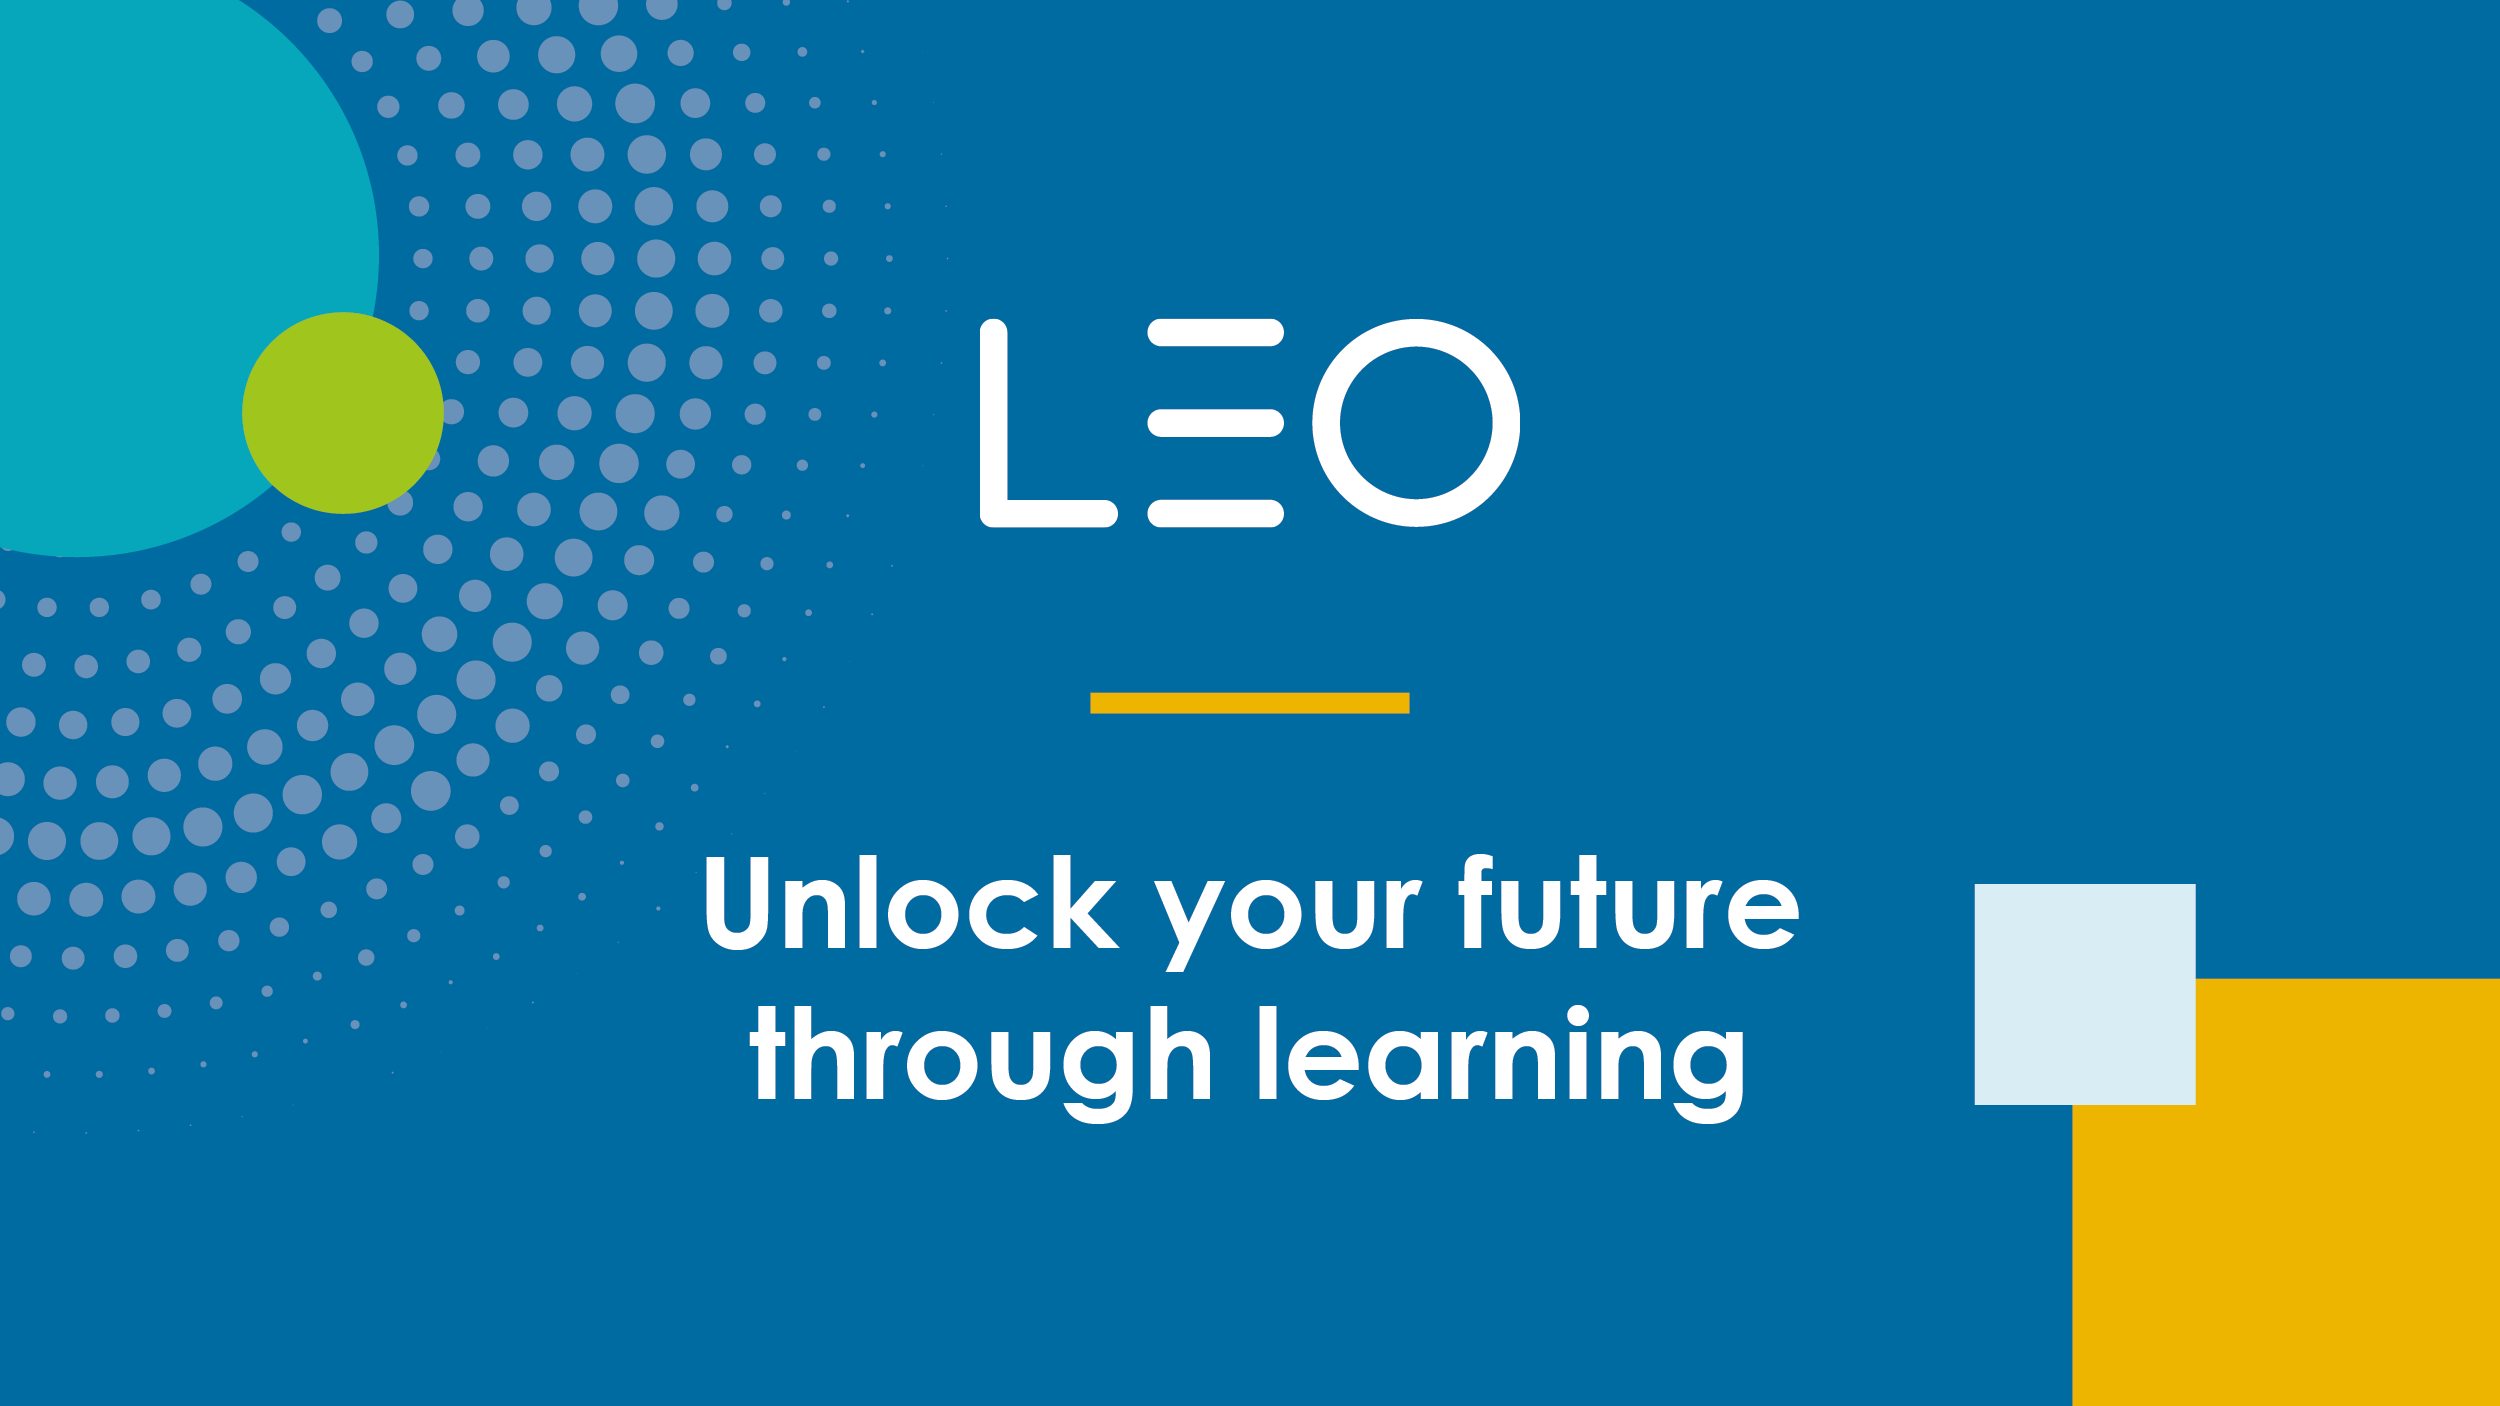 (c) Leolearning.com